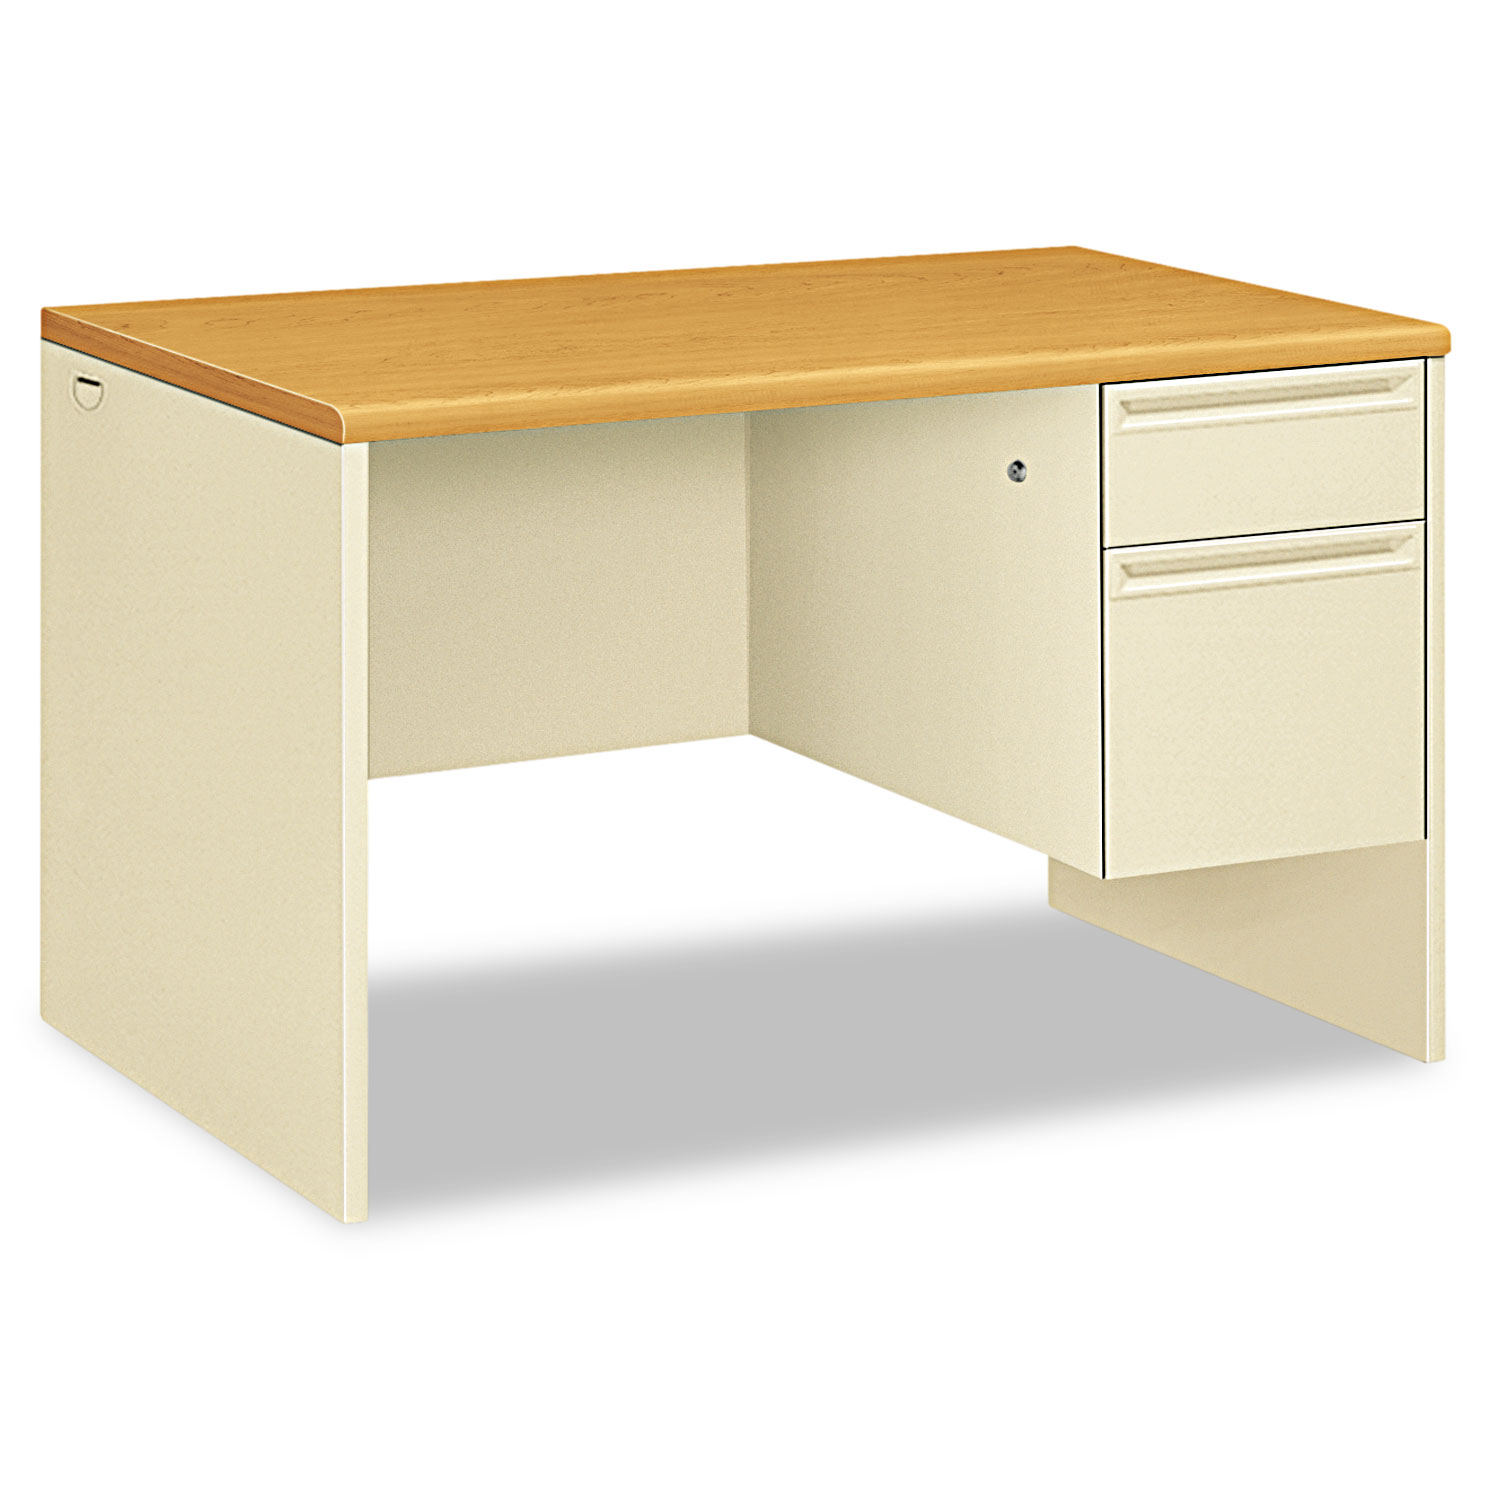  HON H38251.C.L 38000 Series Right Pedestal Desk, 48w x 30d x 29.5h, Harvest/Putty (HON38251CL) 